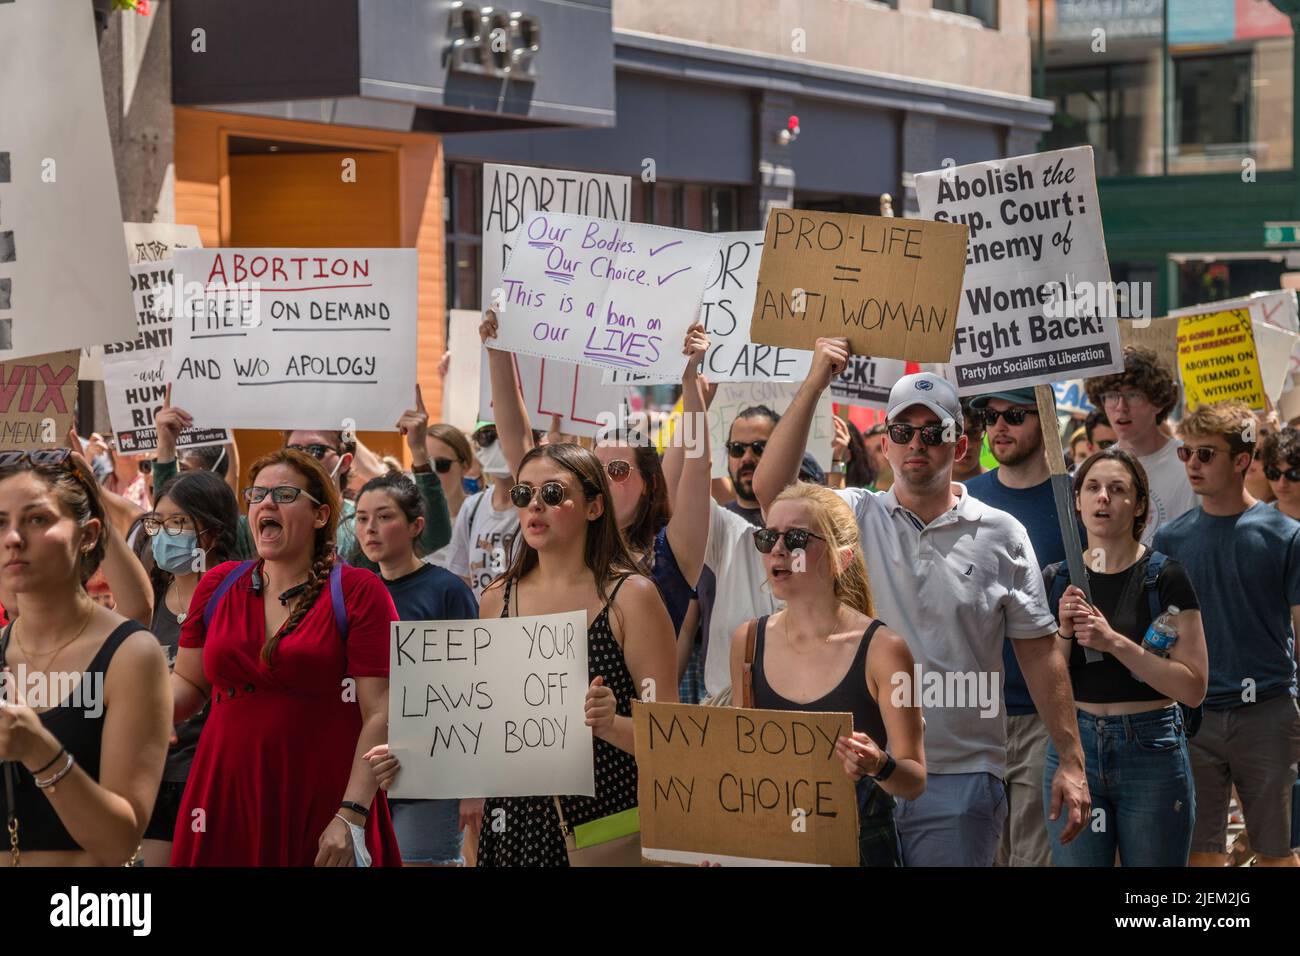 Proteste mit Abtreibungsbefürwortern bei der Demonstration als Reaktion auf das Urteil des Obersten Gerichtshofs, mit dem Roe v. Wade umgestricht wurde. Stockfoto